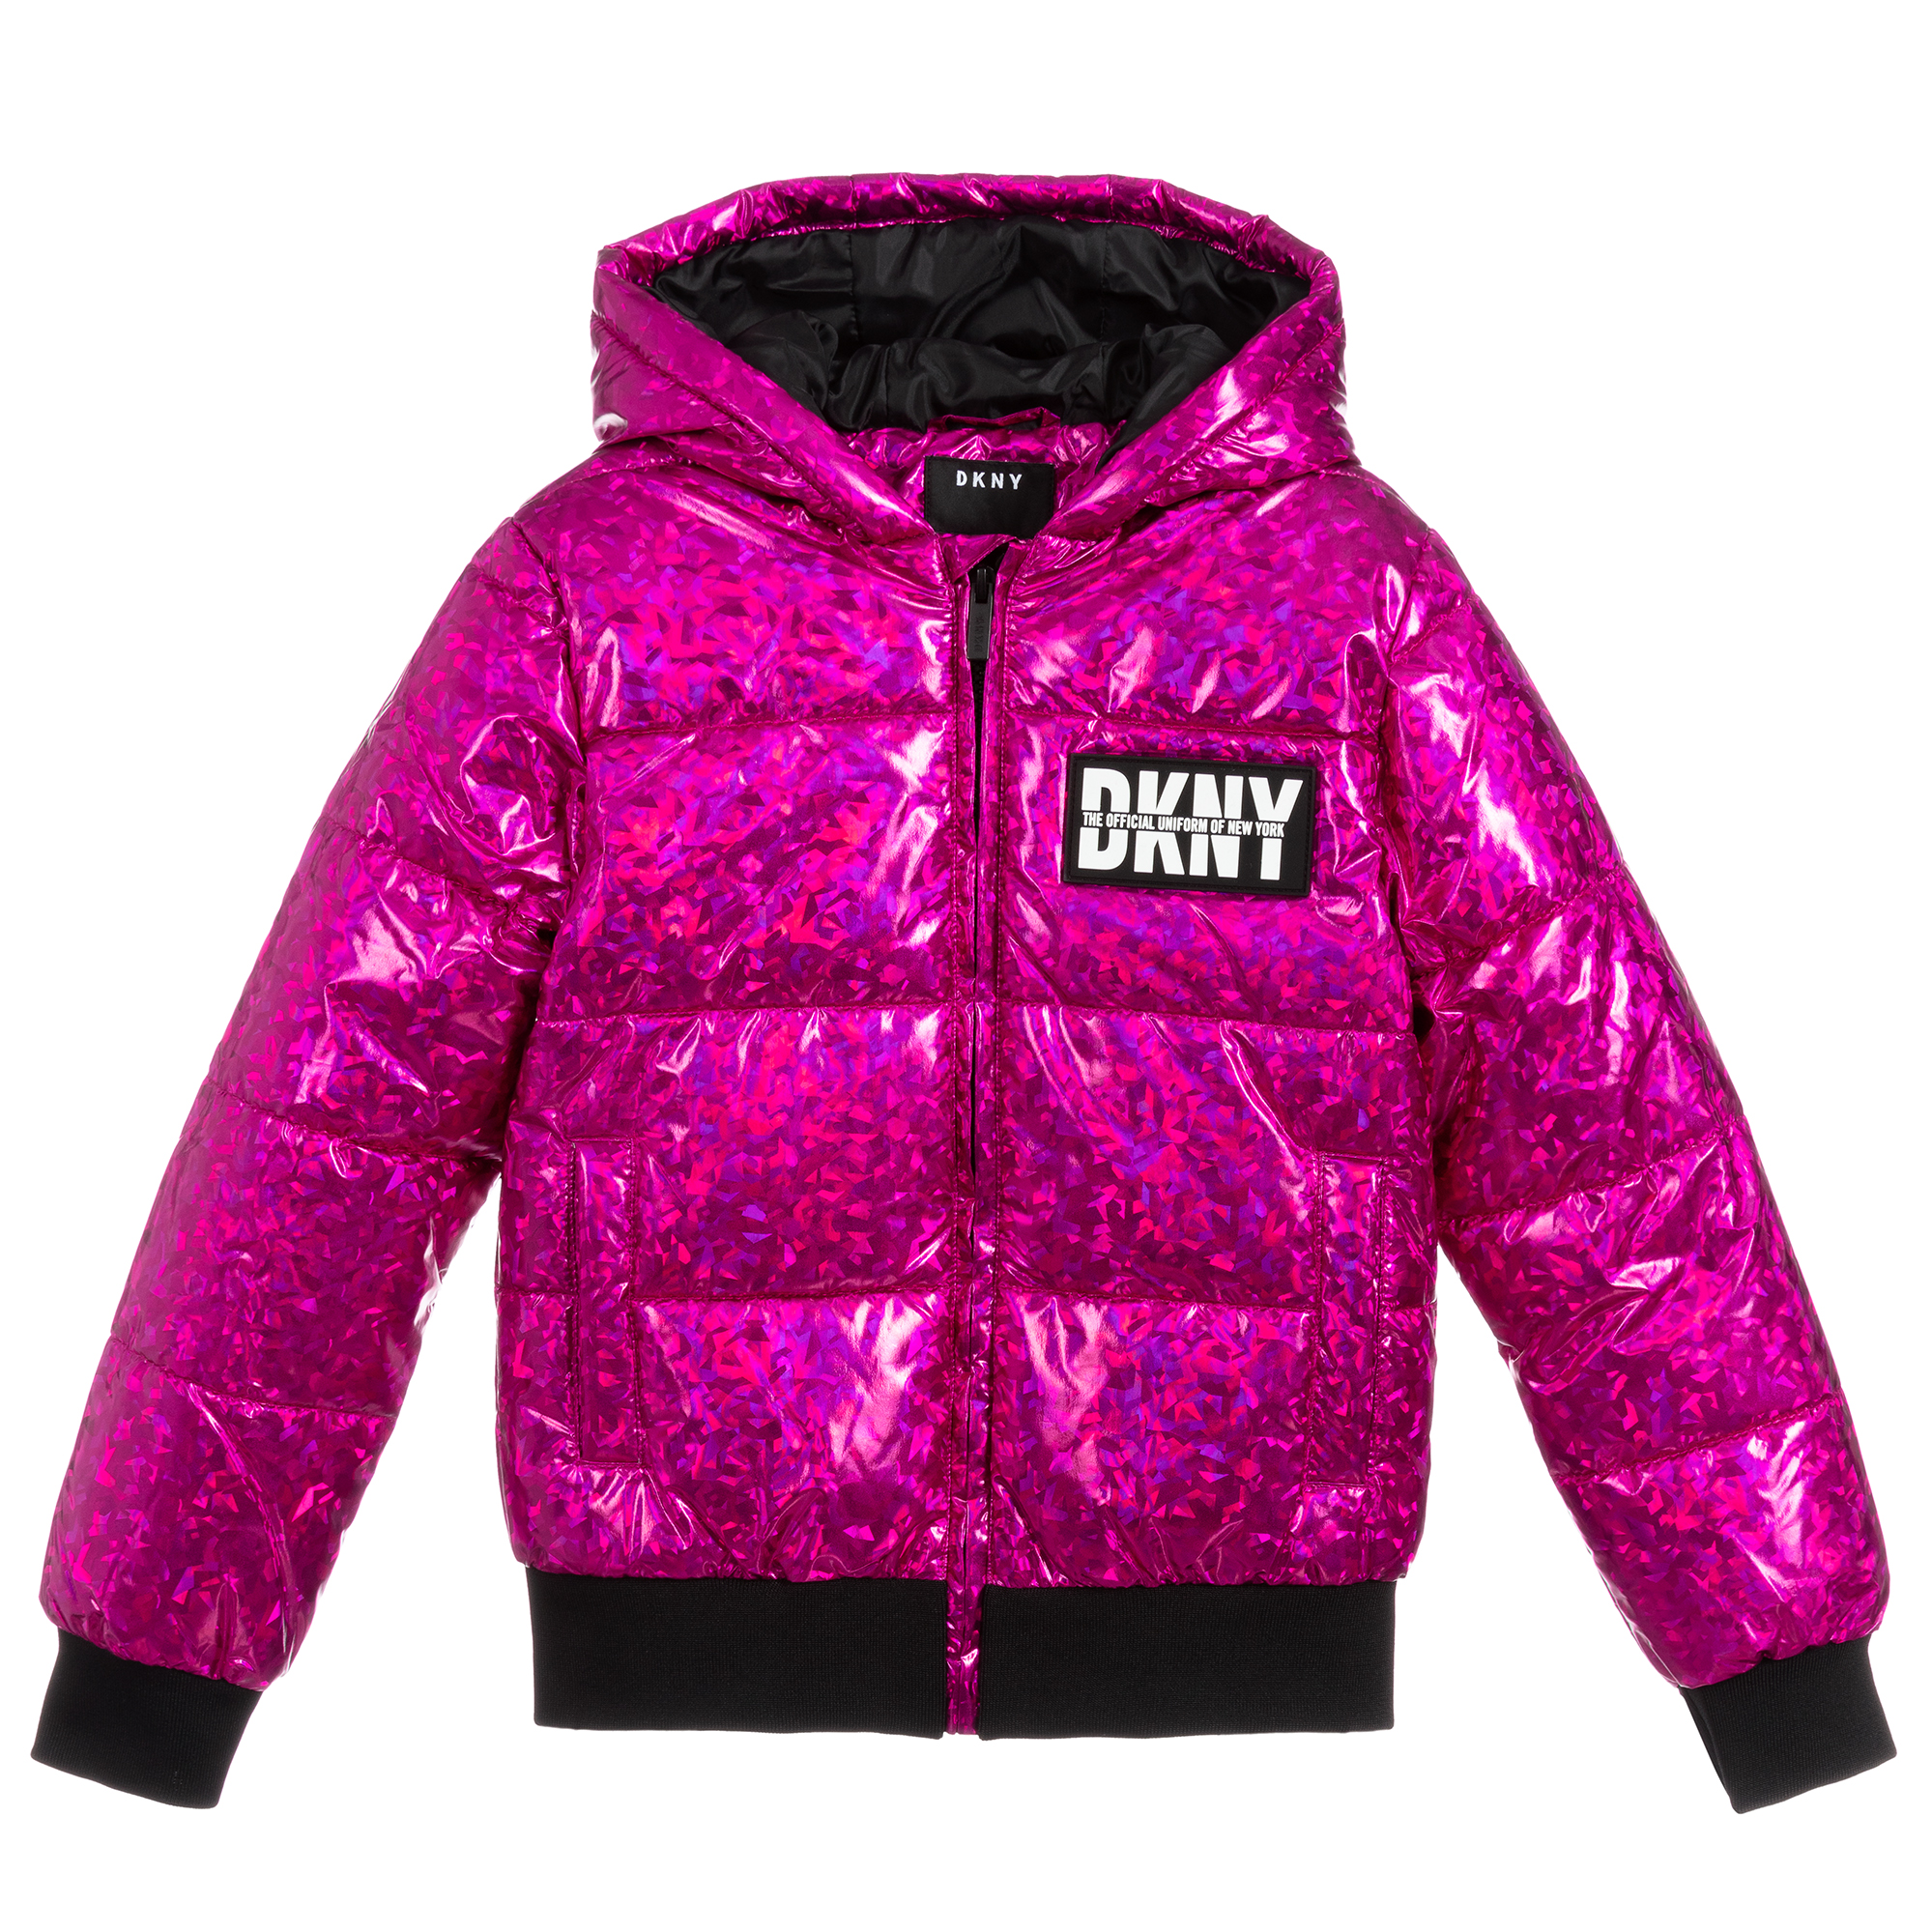 Авито купить куртку для девочки. Паффер джэкет. Logo Puffer Coat DKNY. Валберис куртки для девочек подростков. Куртка Hanna Puffer Jacket.